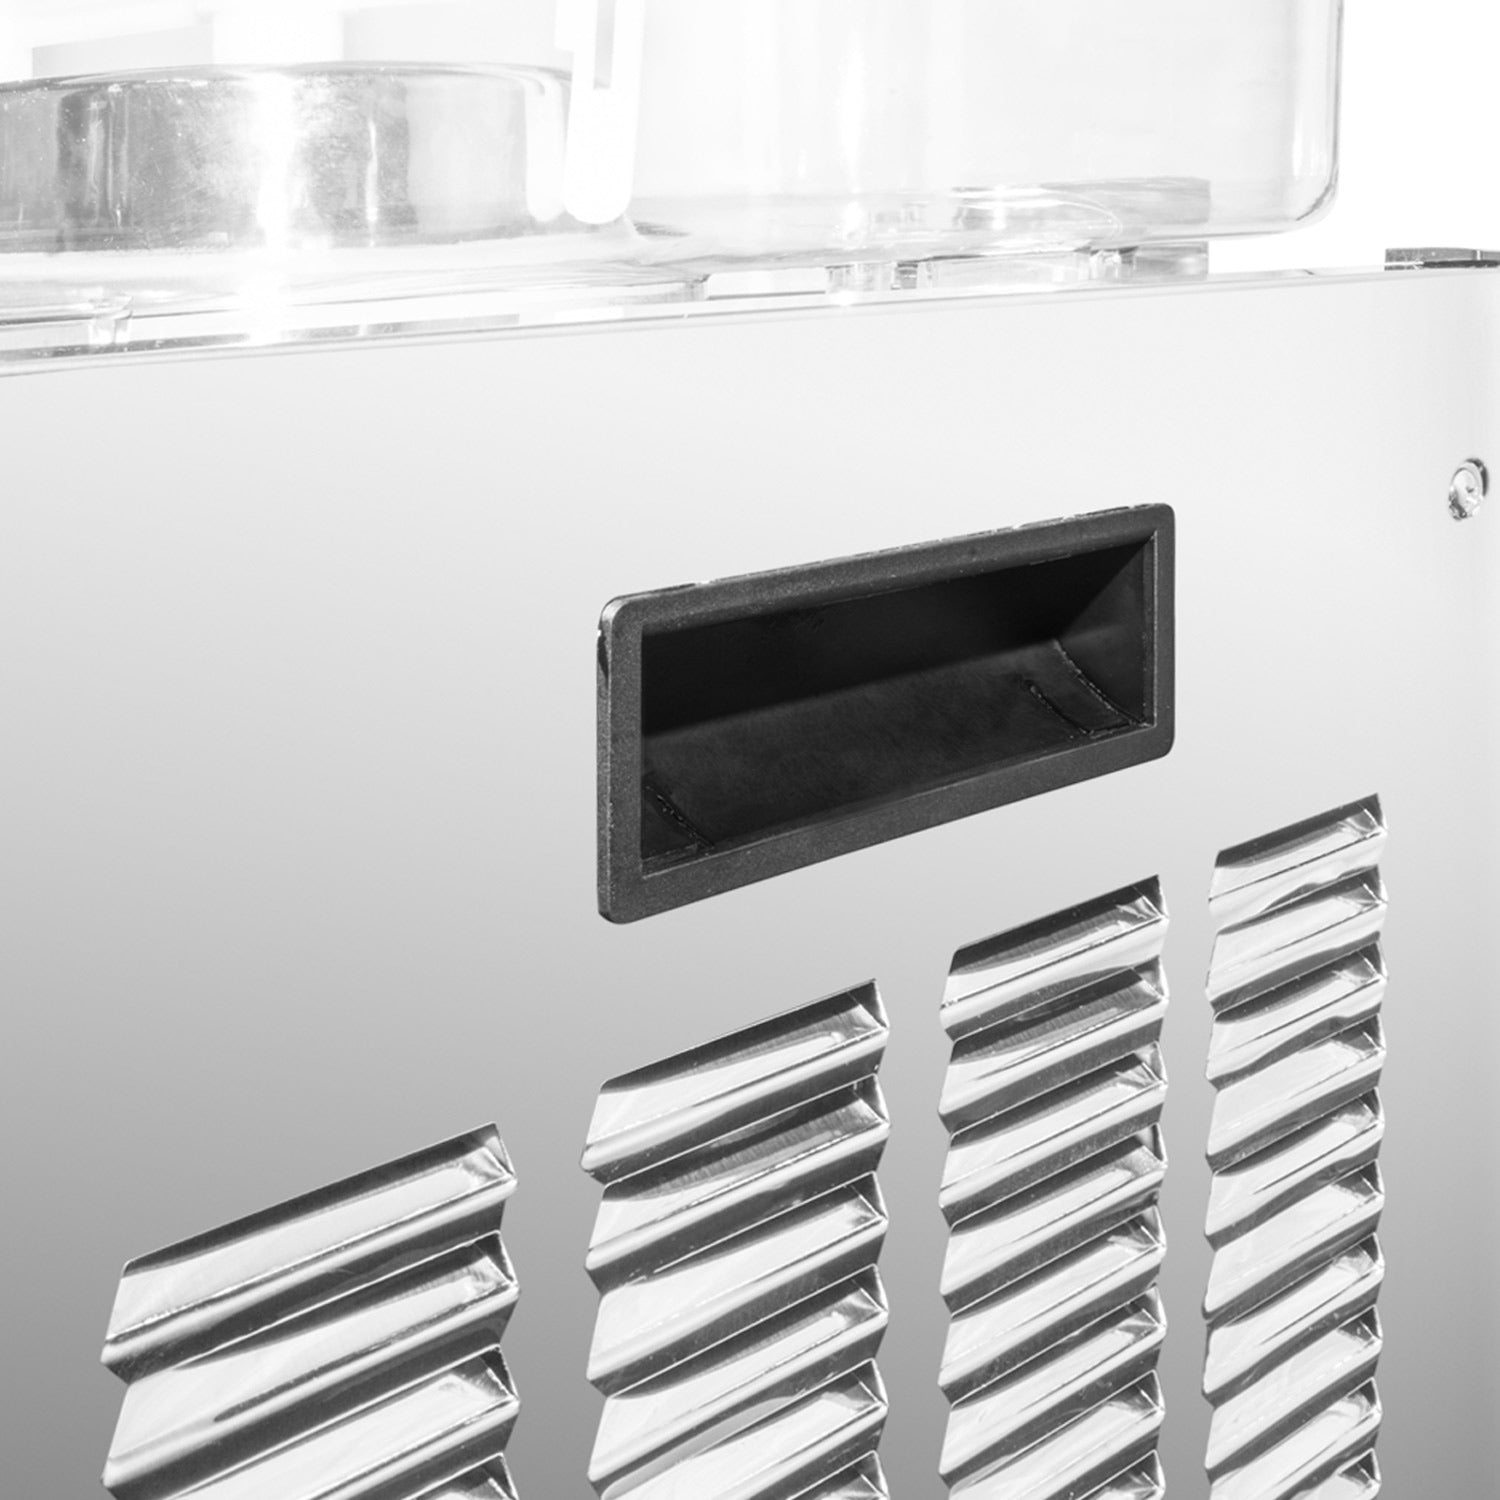 A-DG6LYP2 Electric Beverage Dispenser | Cooling & Heating | 18L | 2 Tanks